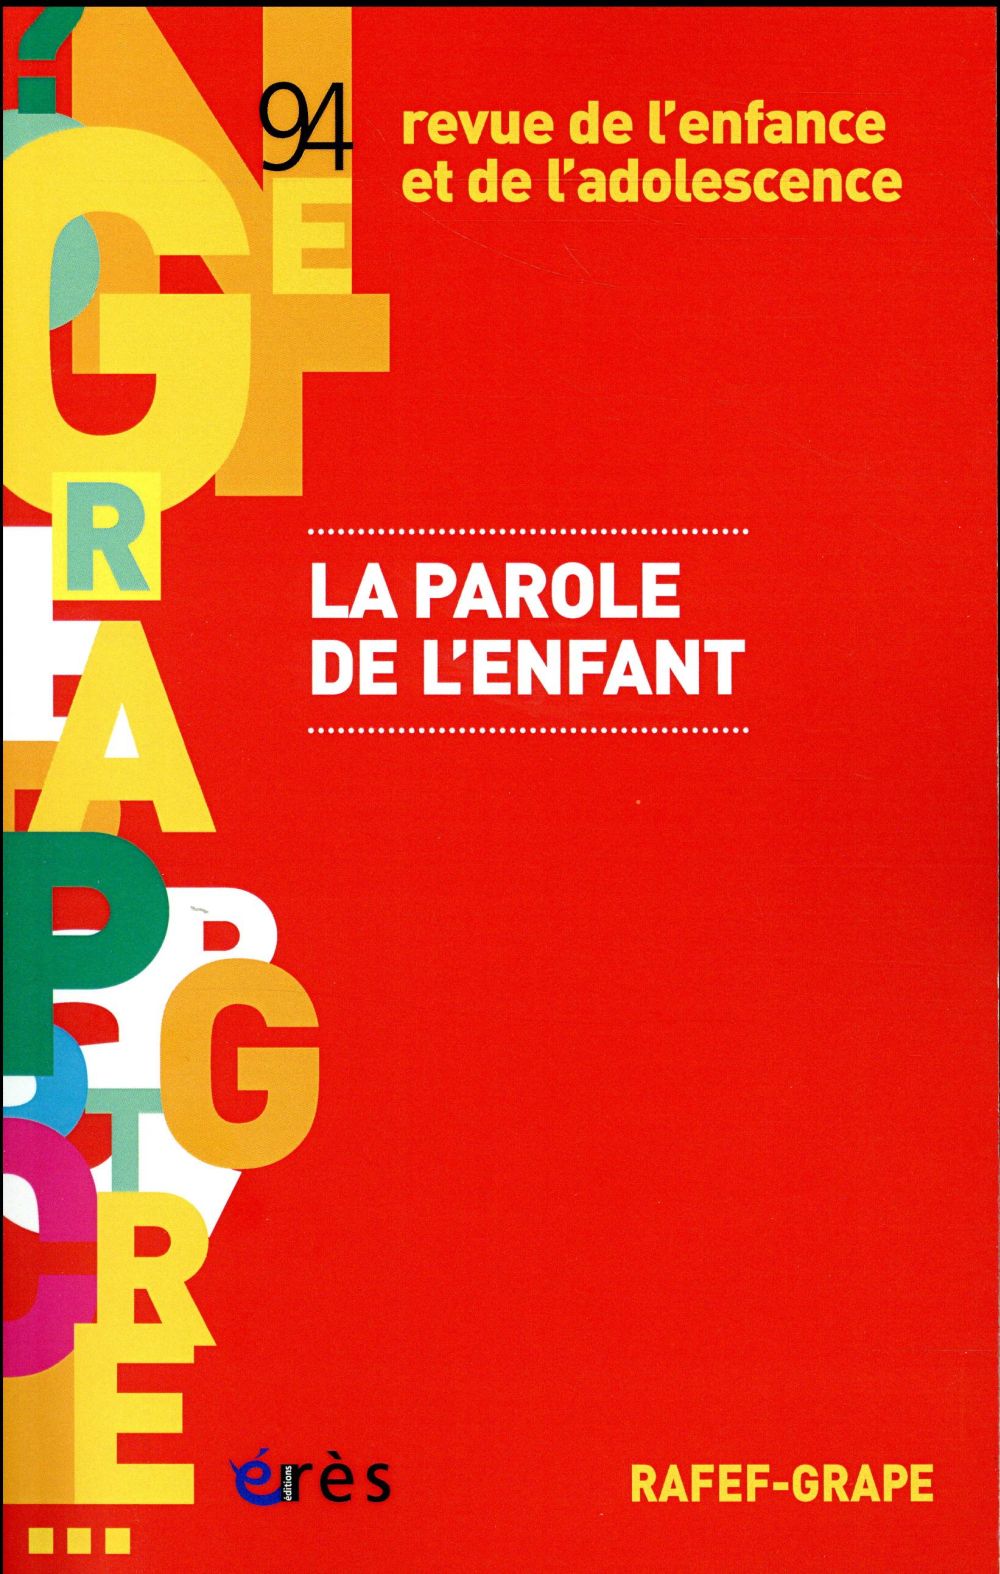 RAFEF-GRAPE 094 - LA PAROLE DE L'ENFANT